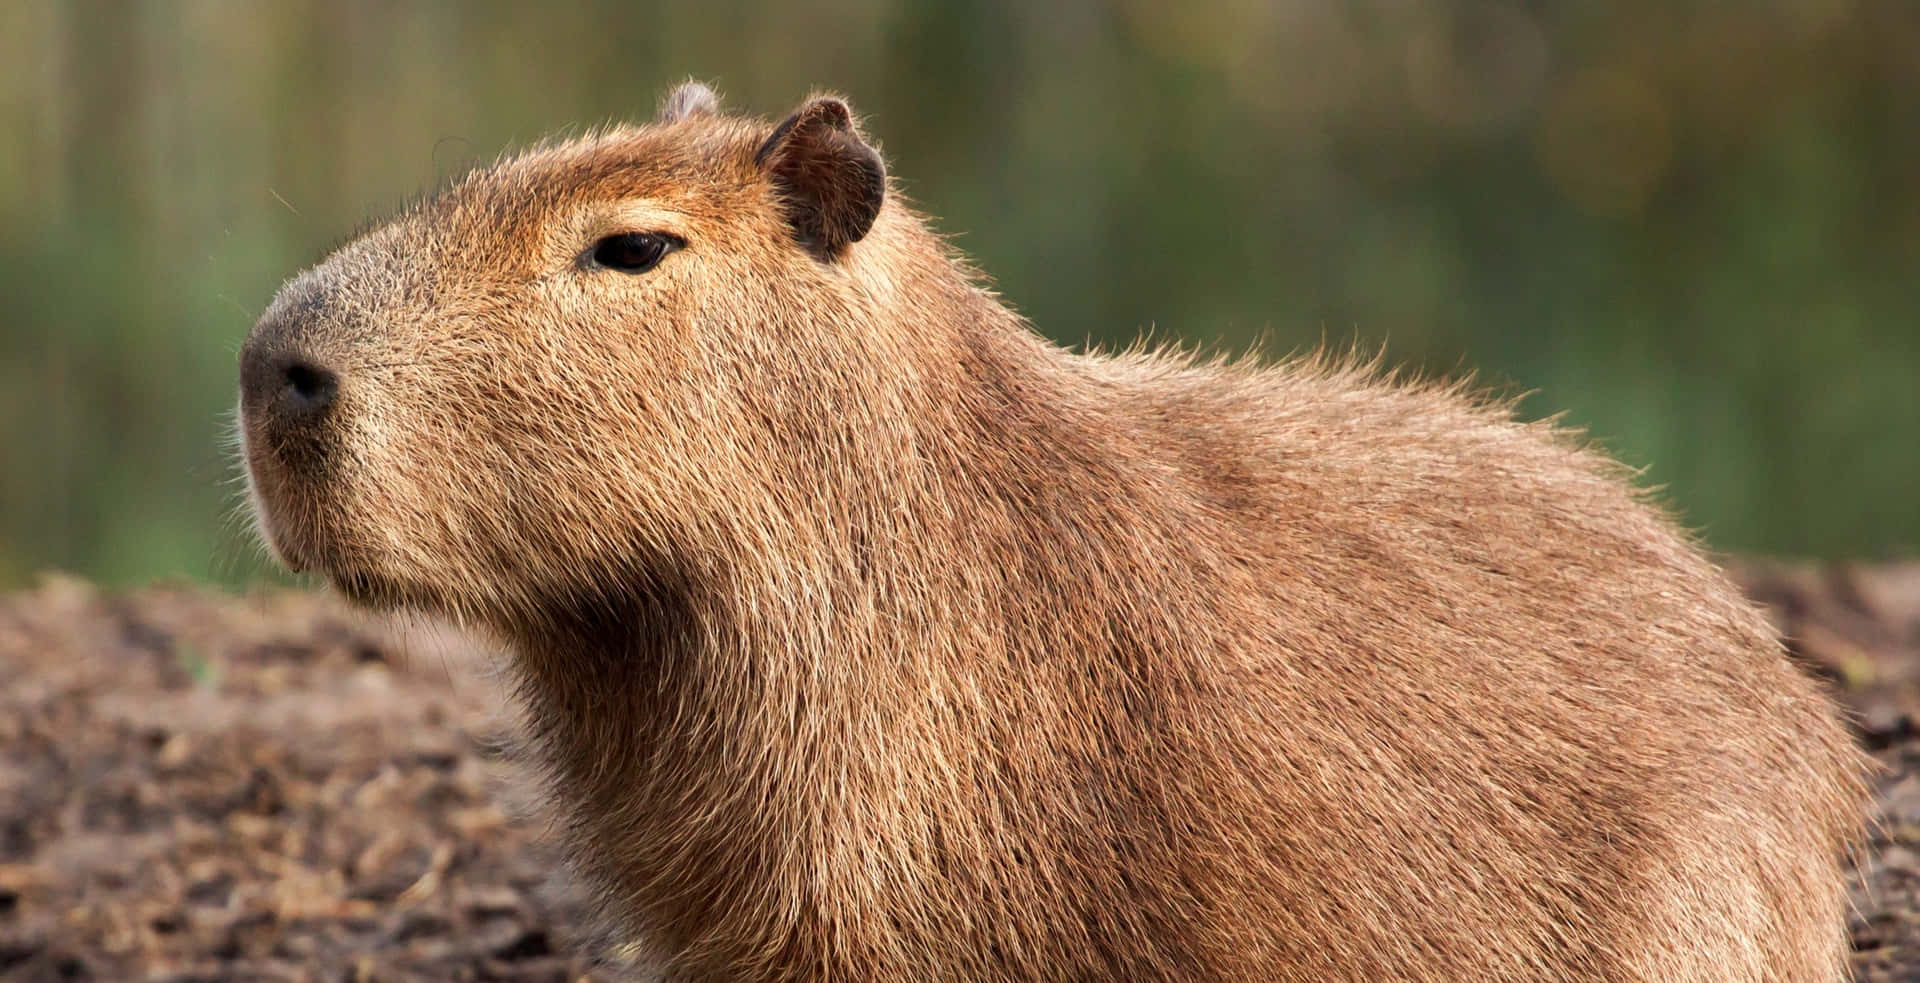 A Close Encounter with a Capybara